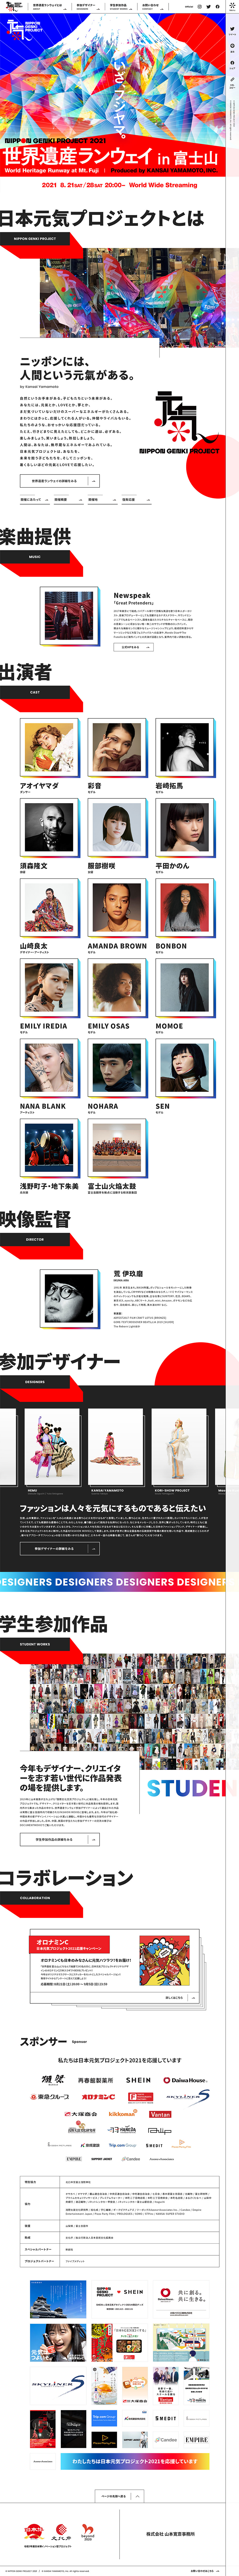 日本元気プロジェクト2021のメイン画像が表示されています